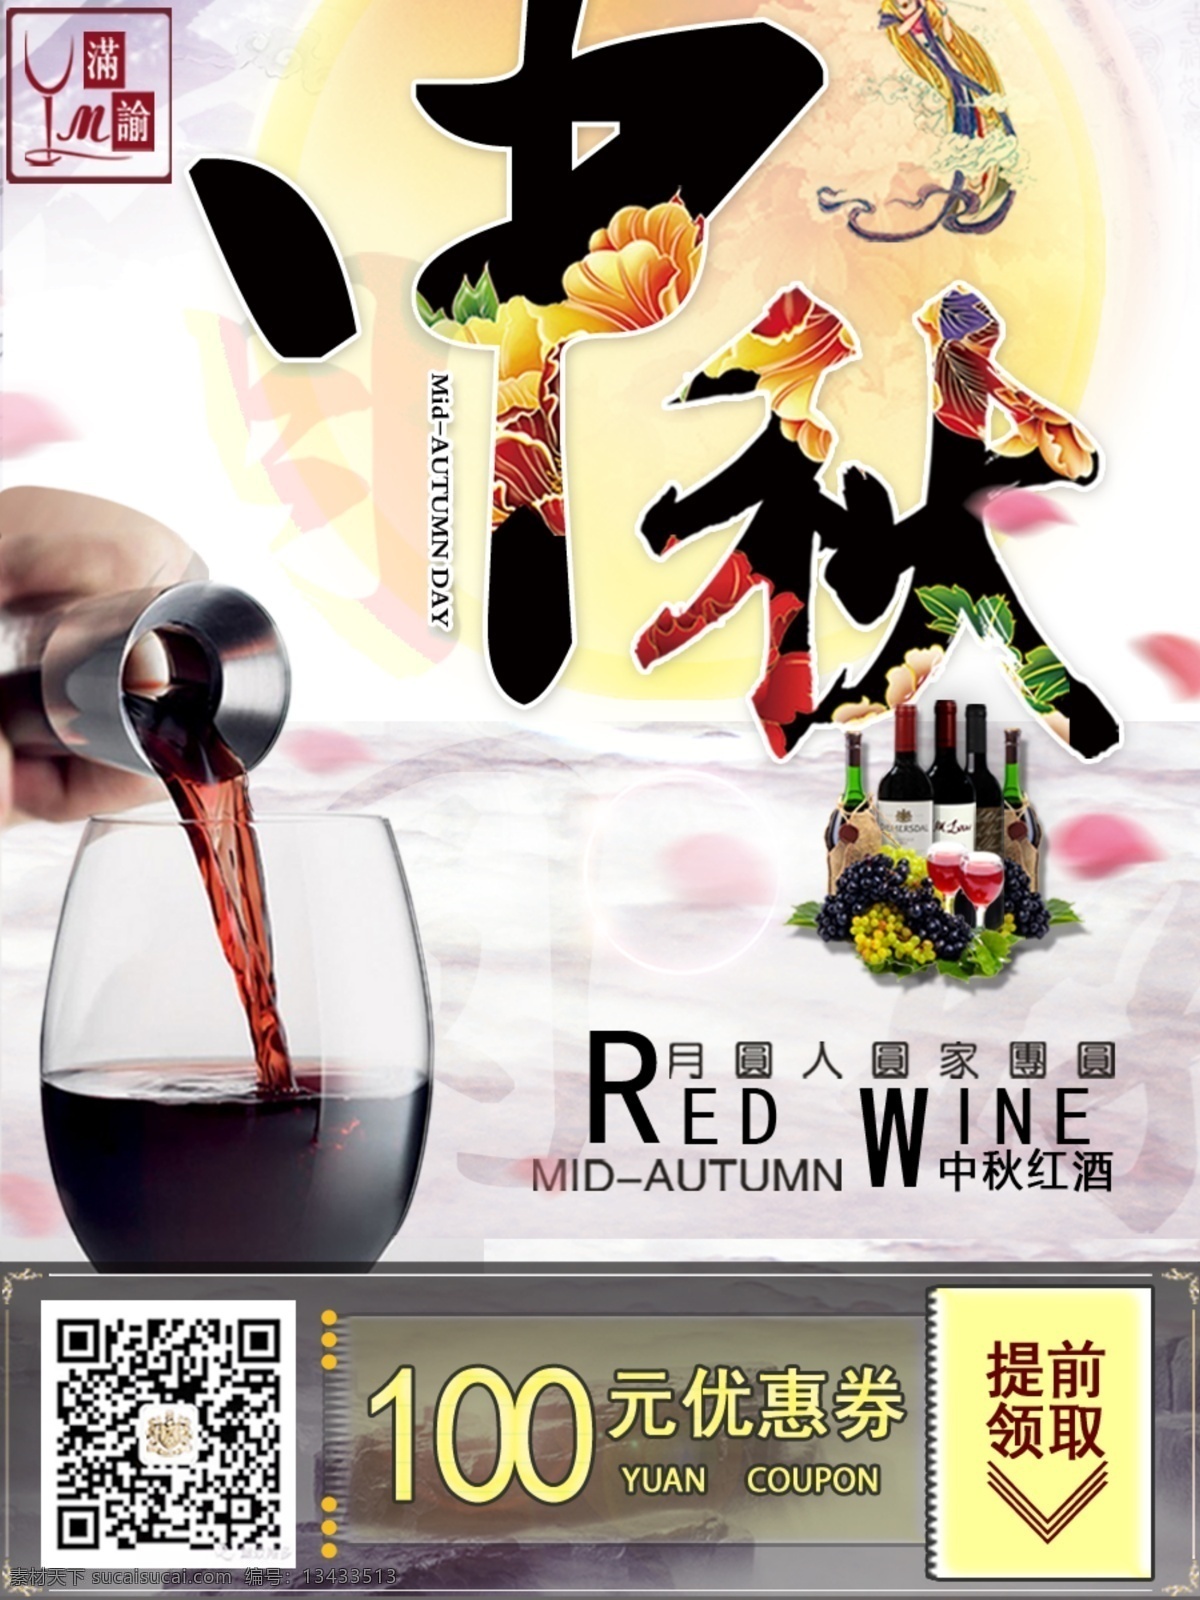 中秋节 红酒 促销活动 海报 促销 活动 淘宝素材 淘宝设计 淘宝模板下载 白色